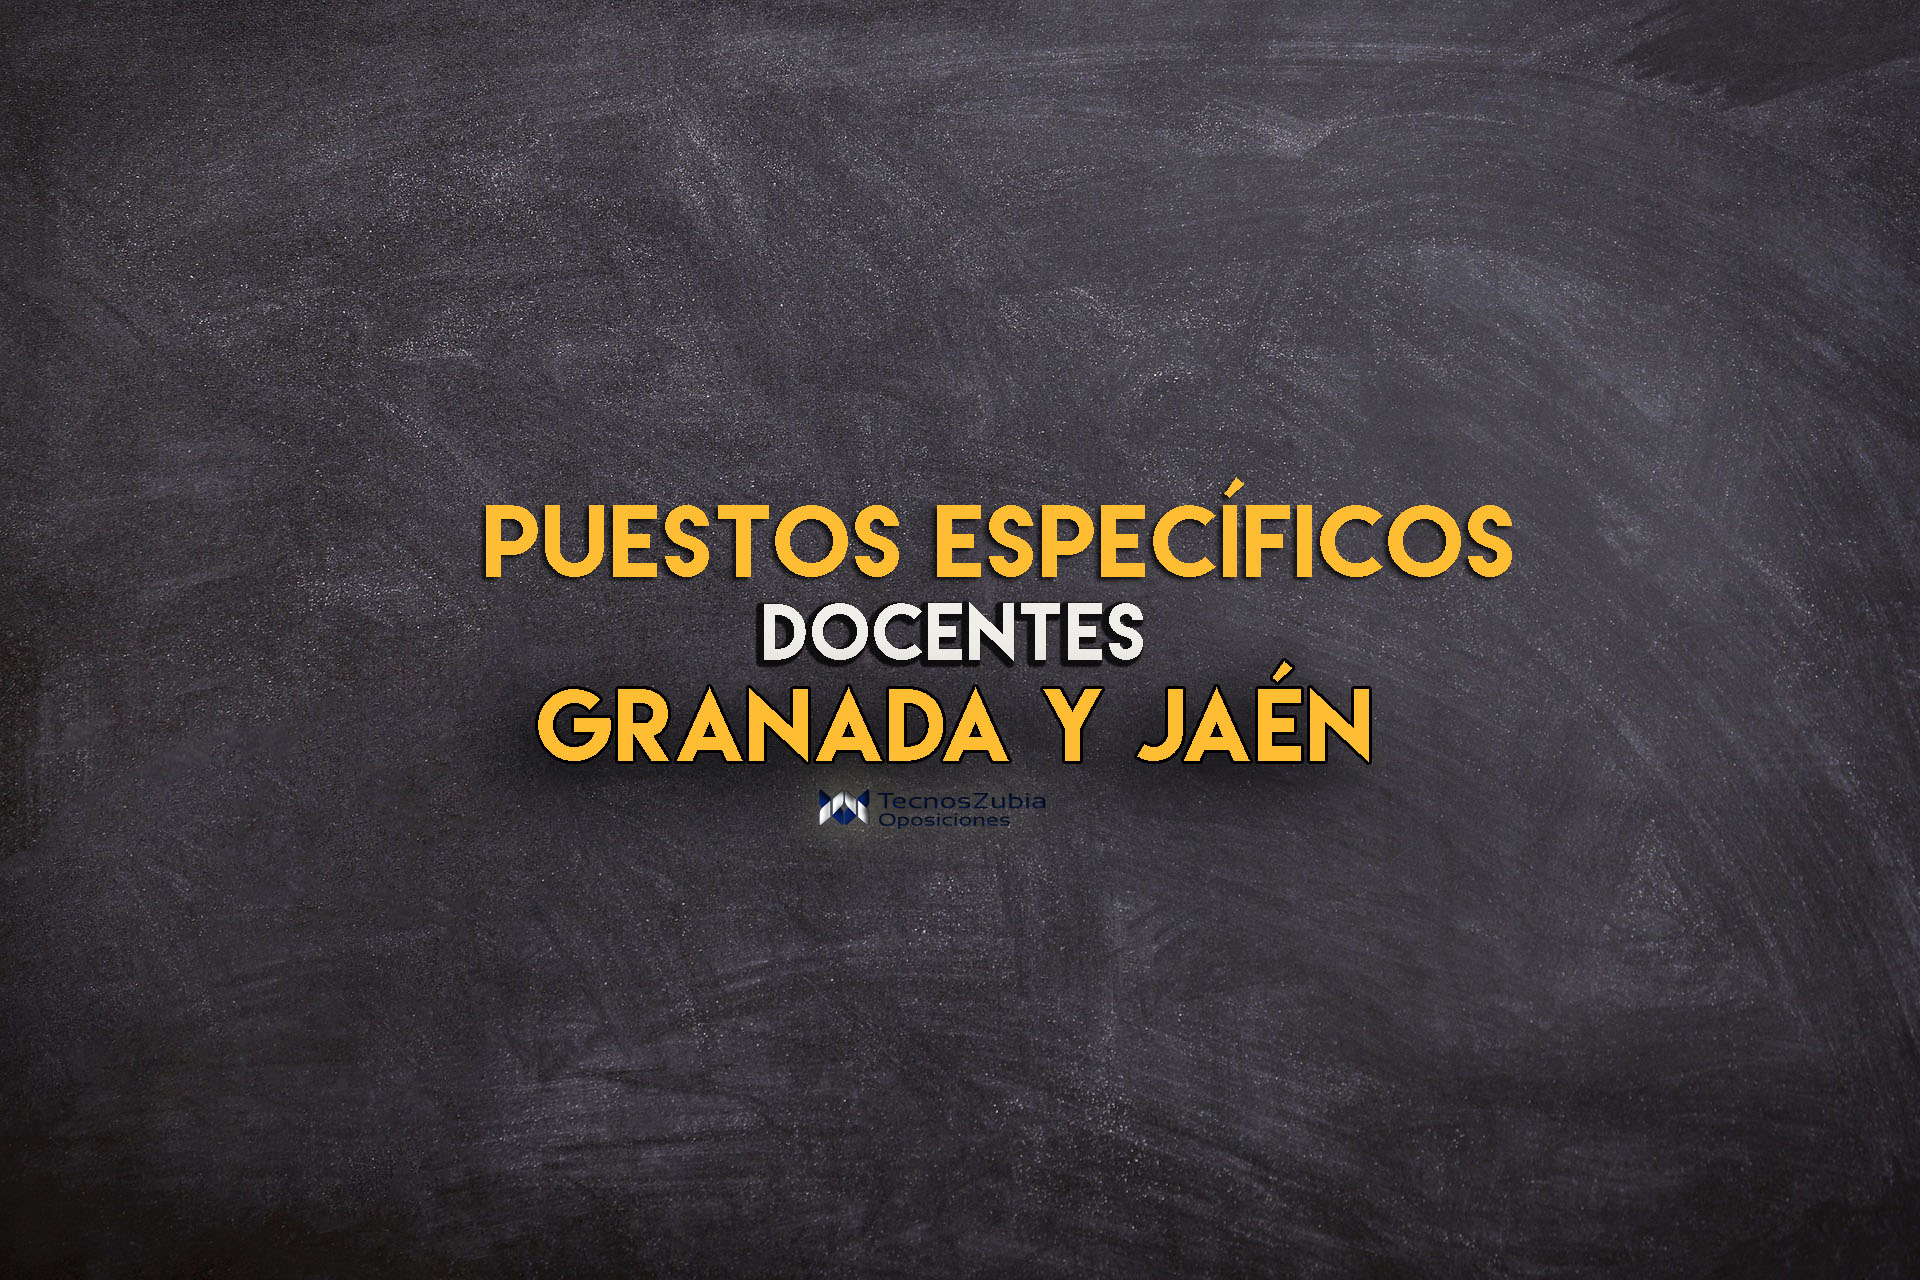 Puestos específicos docentes Granada y Jaén